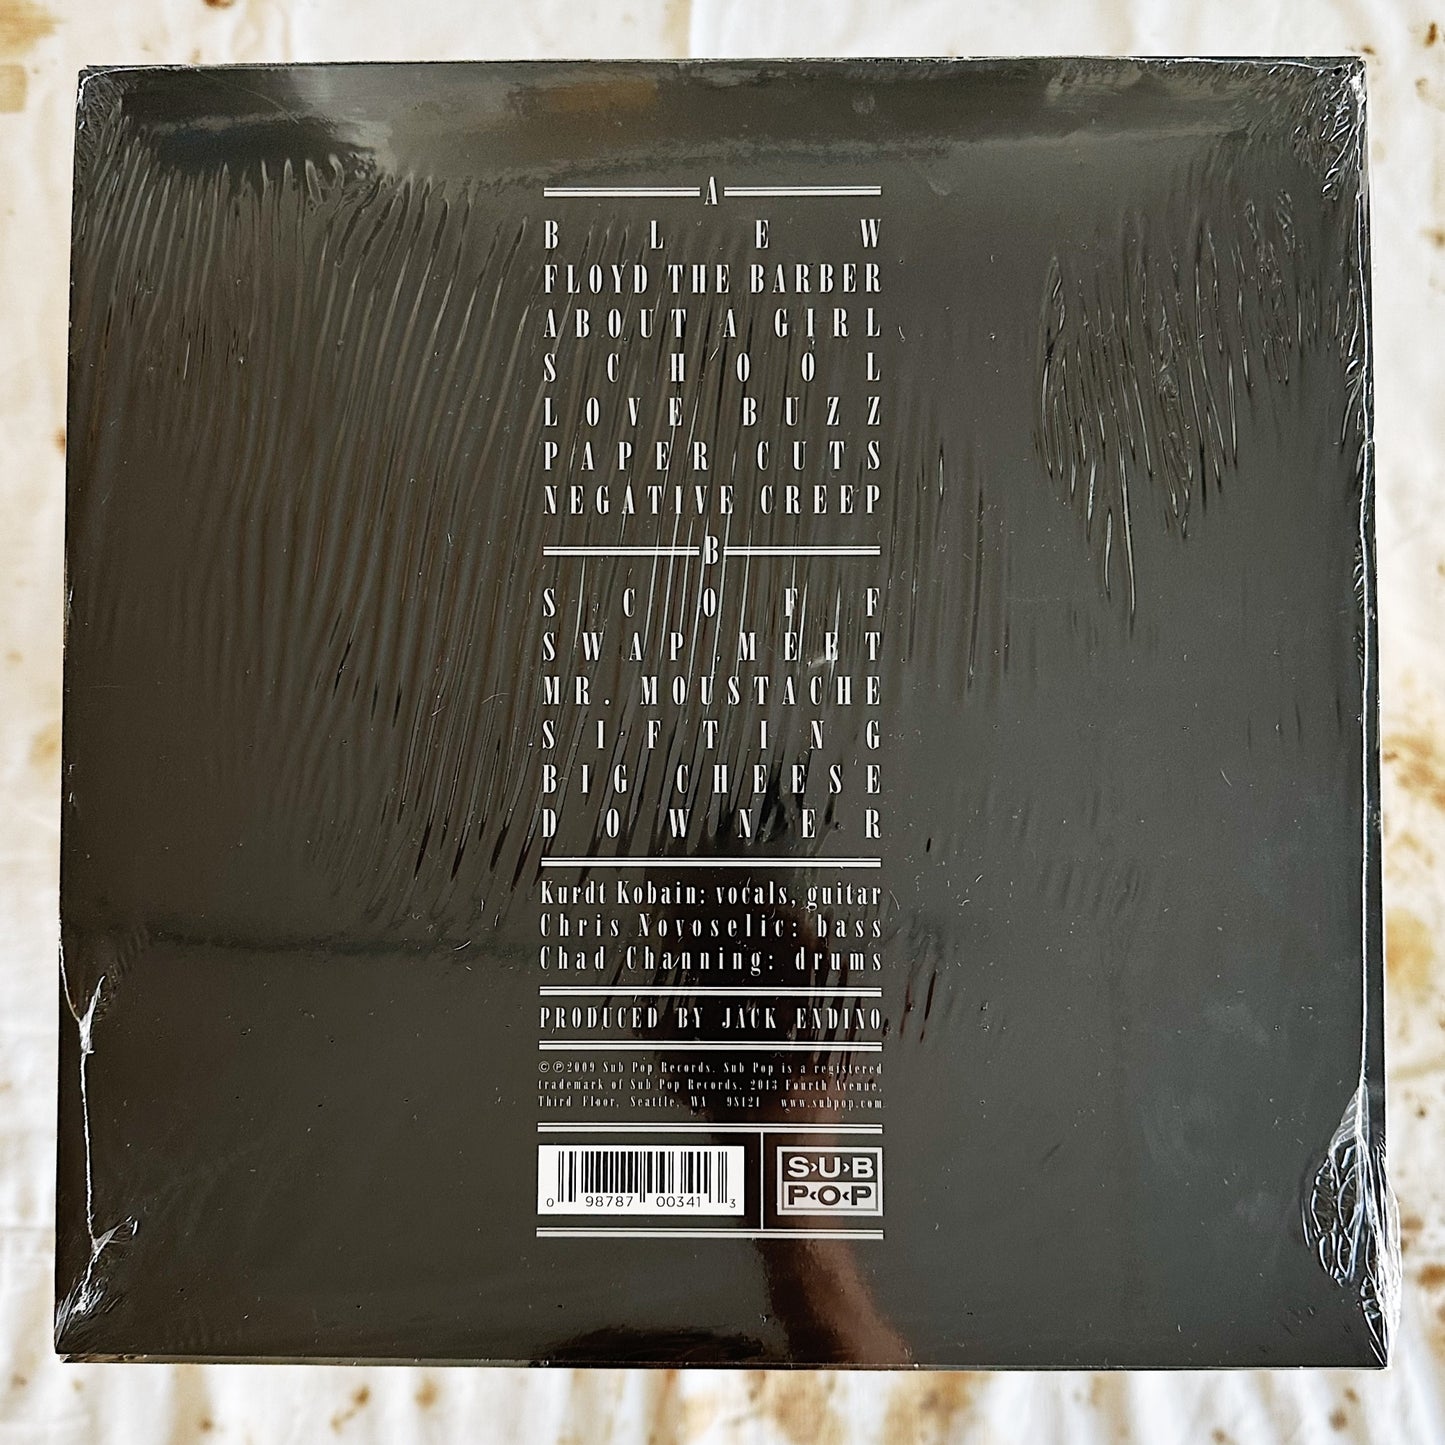 Nirvana / Bleach LP